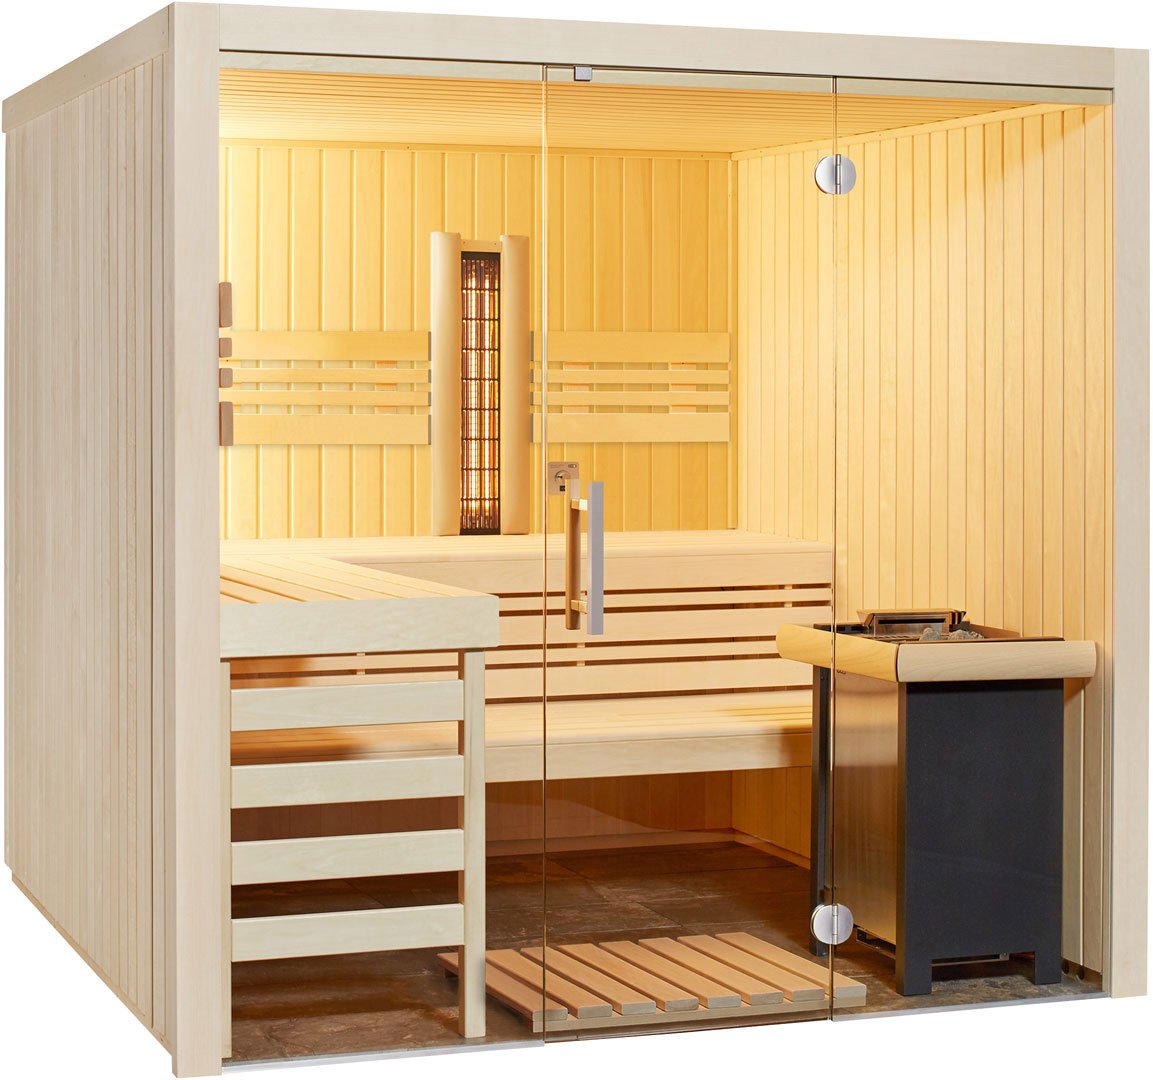 Sauna-Feeling in den eigenen vier Wänden mit der Heimsauna